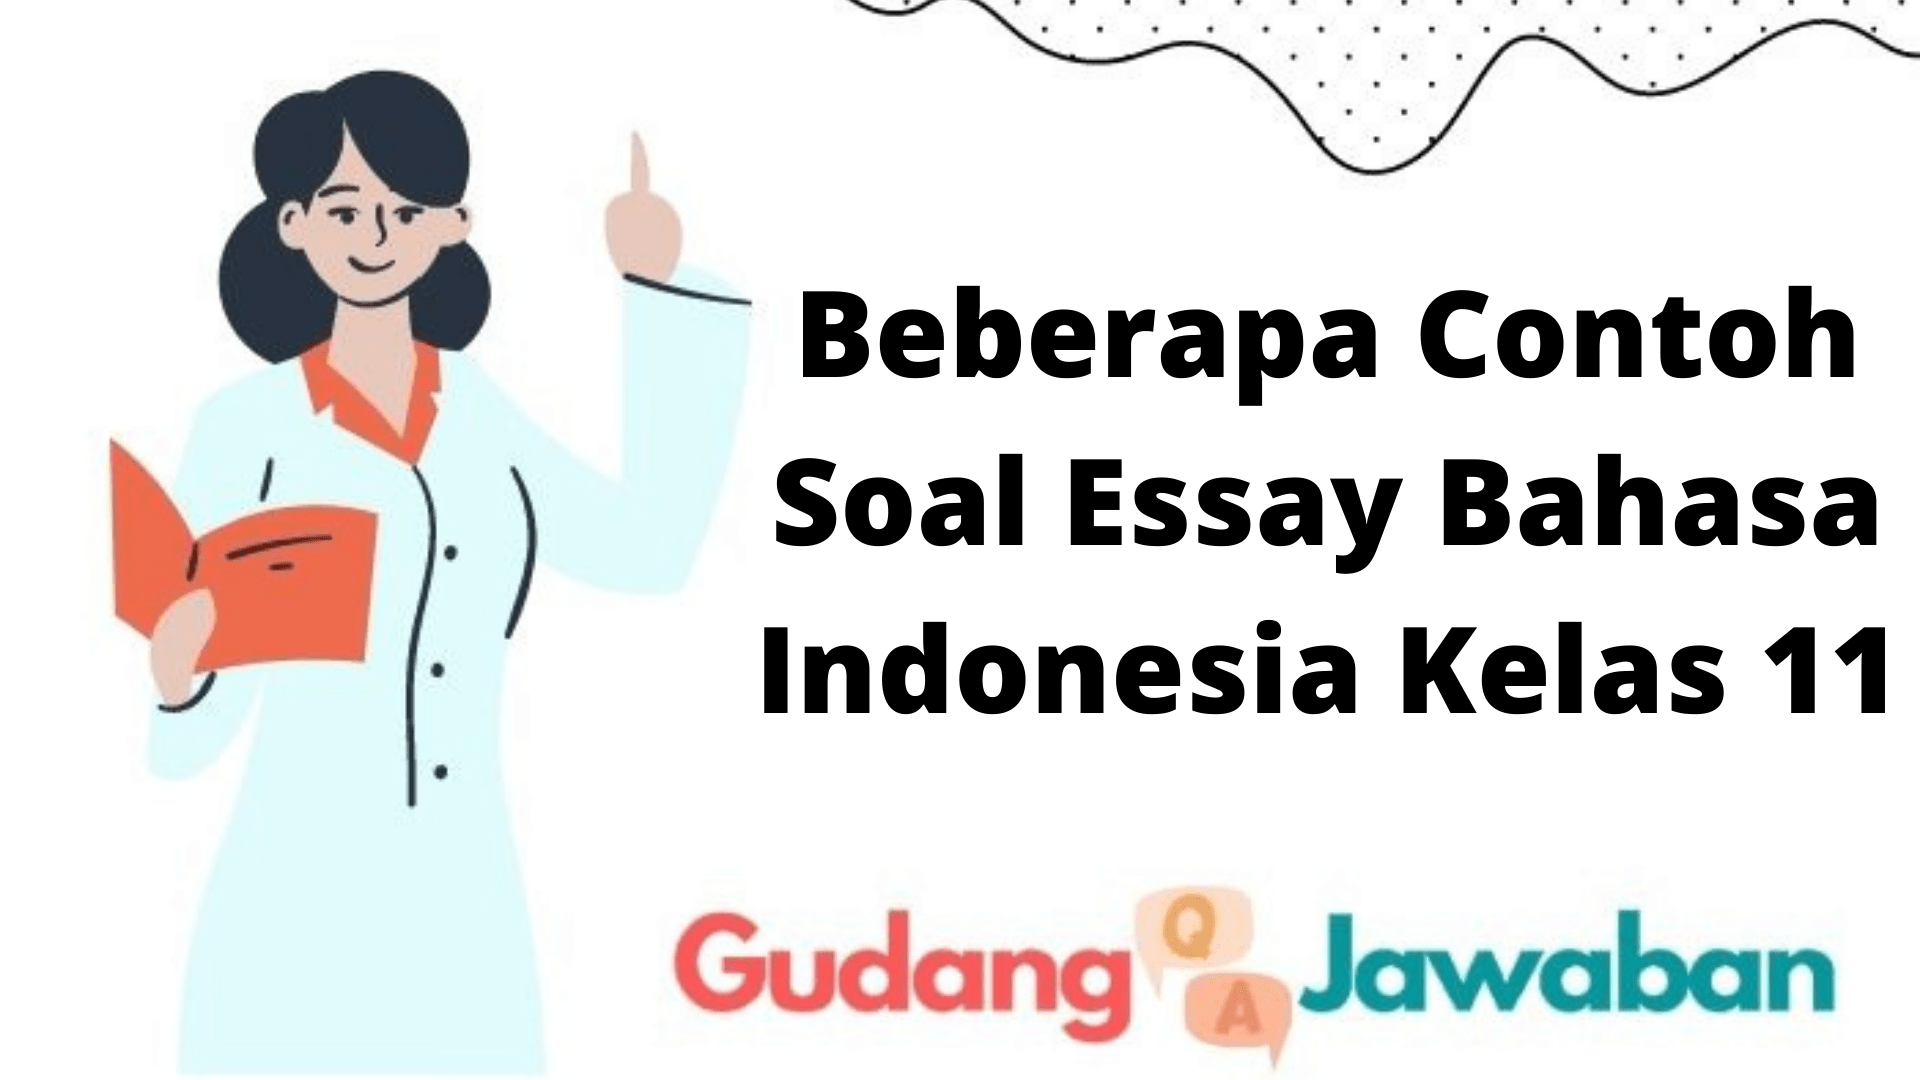 Beberapa Contoh Soal Essay Bahasa Indonesia Kelas 11